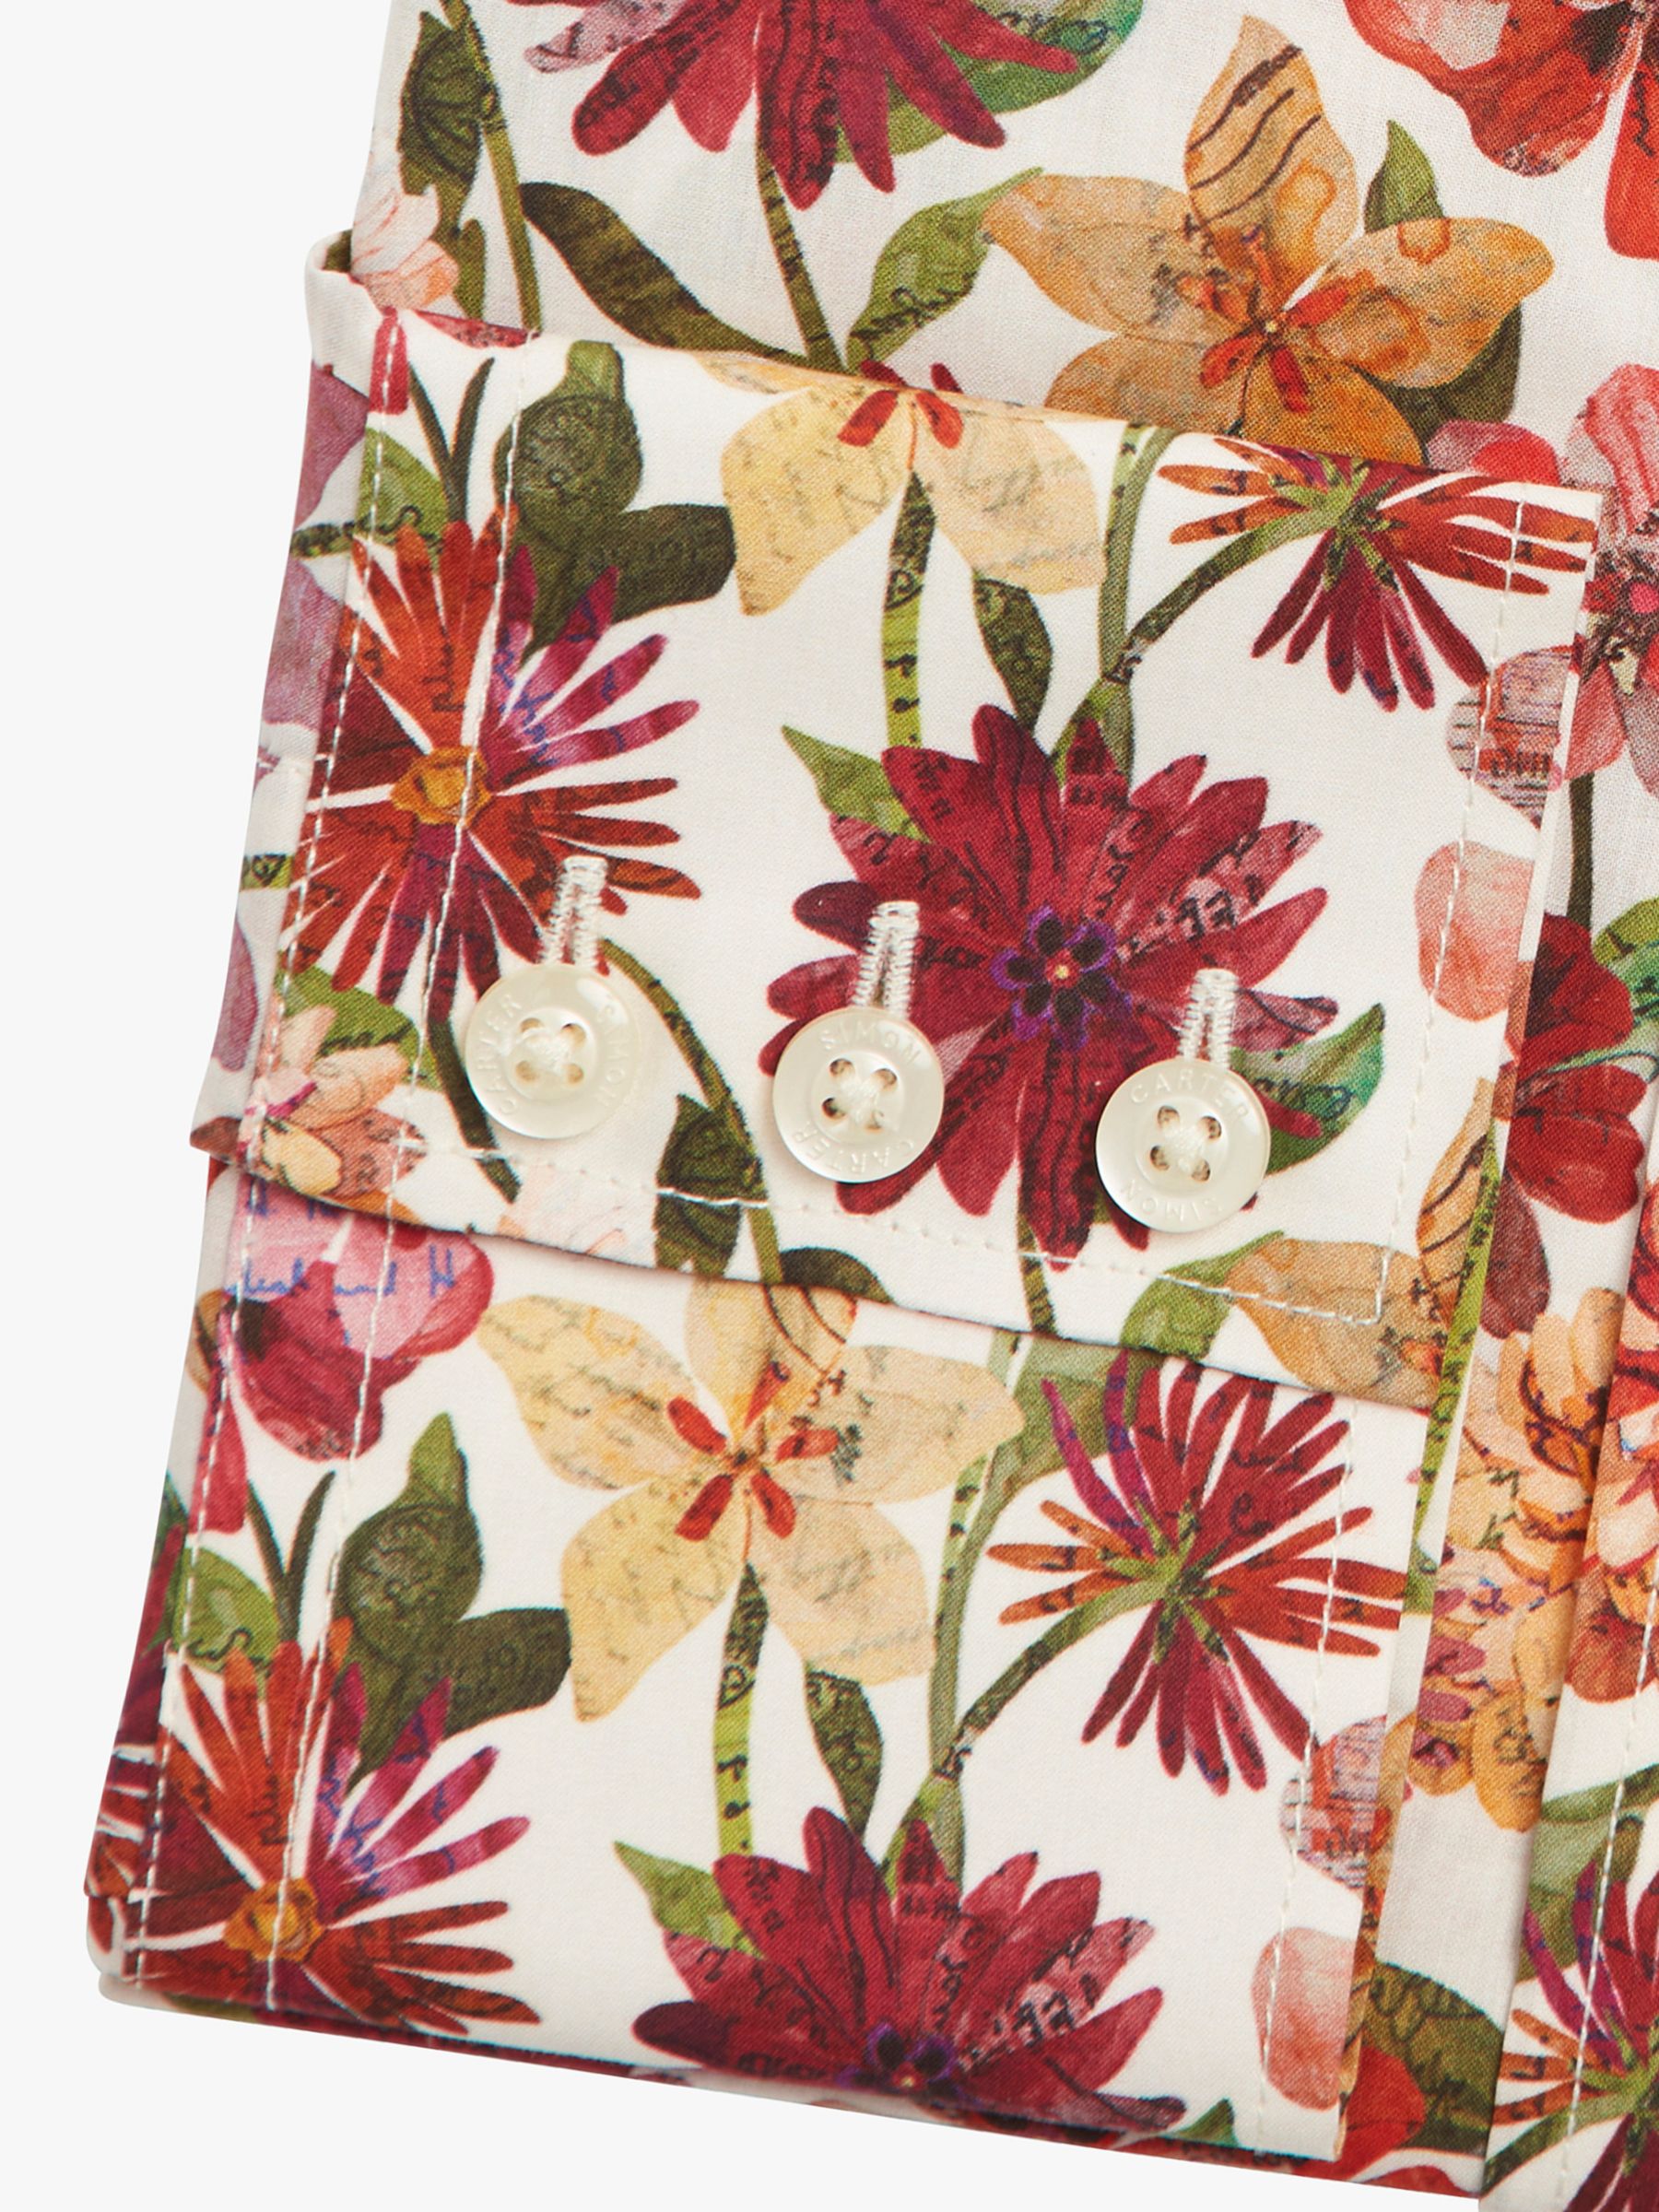 Simon Carter Floral Letters Shirt, Multi, 15.5